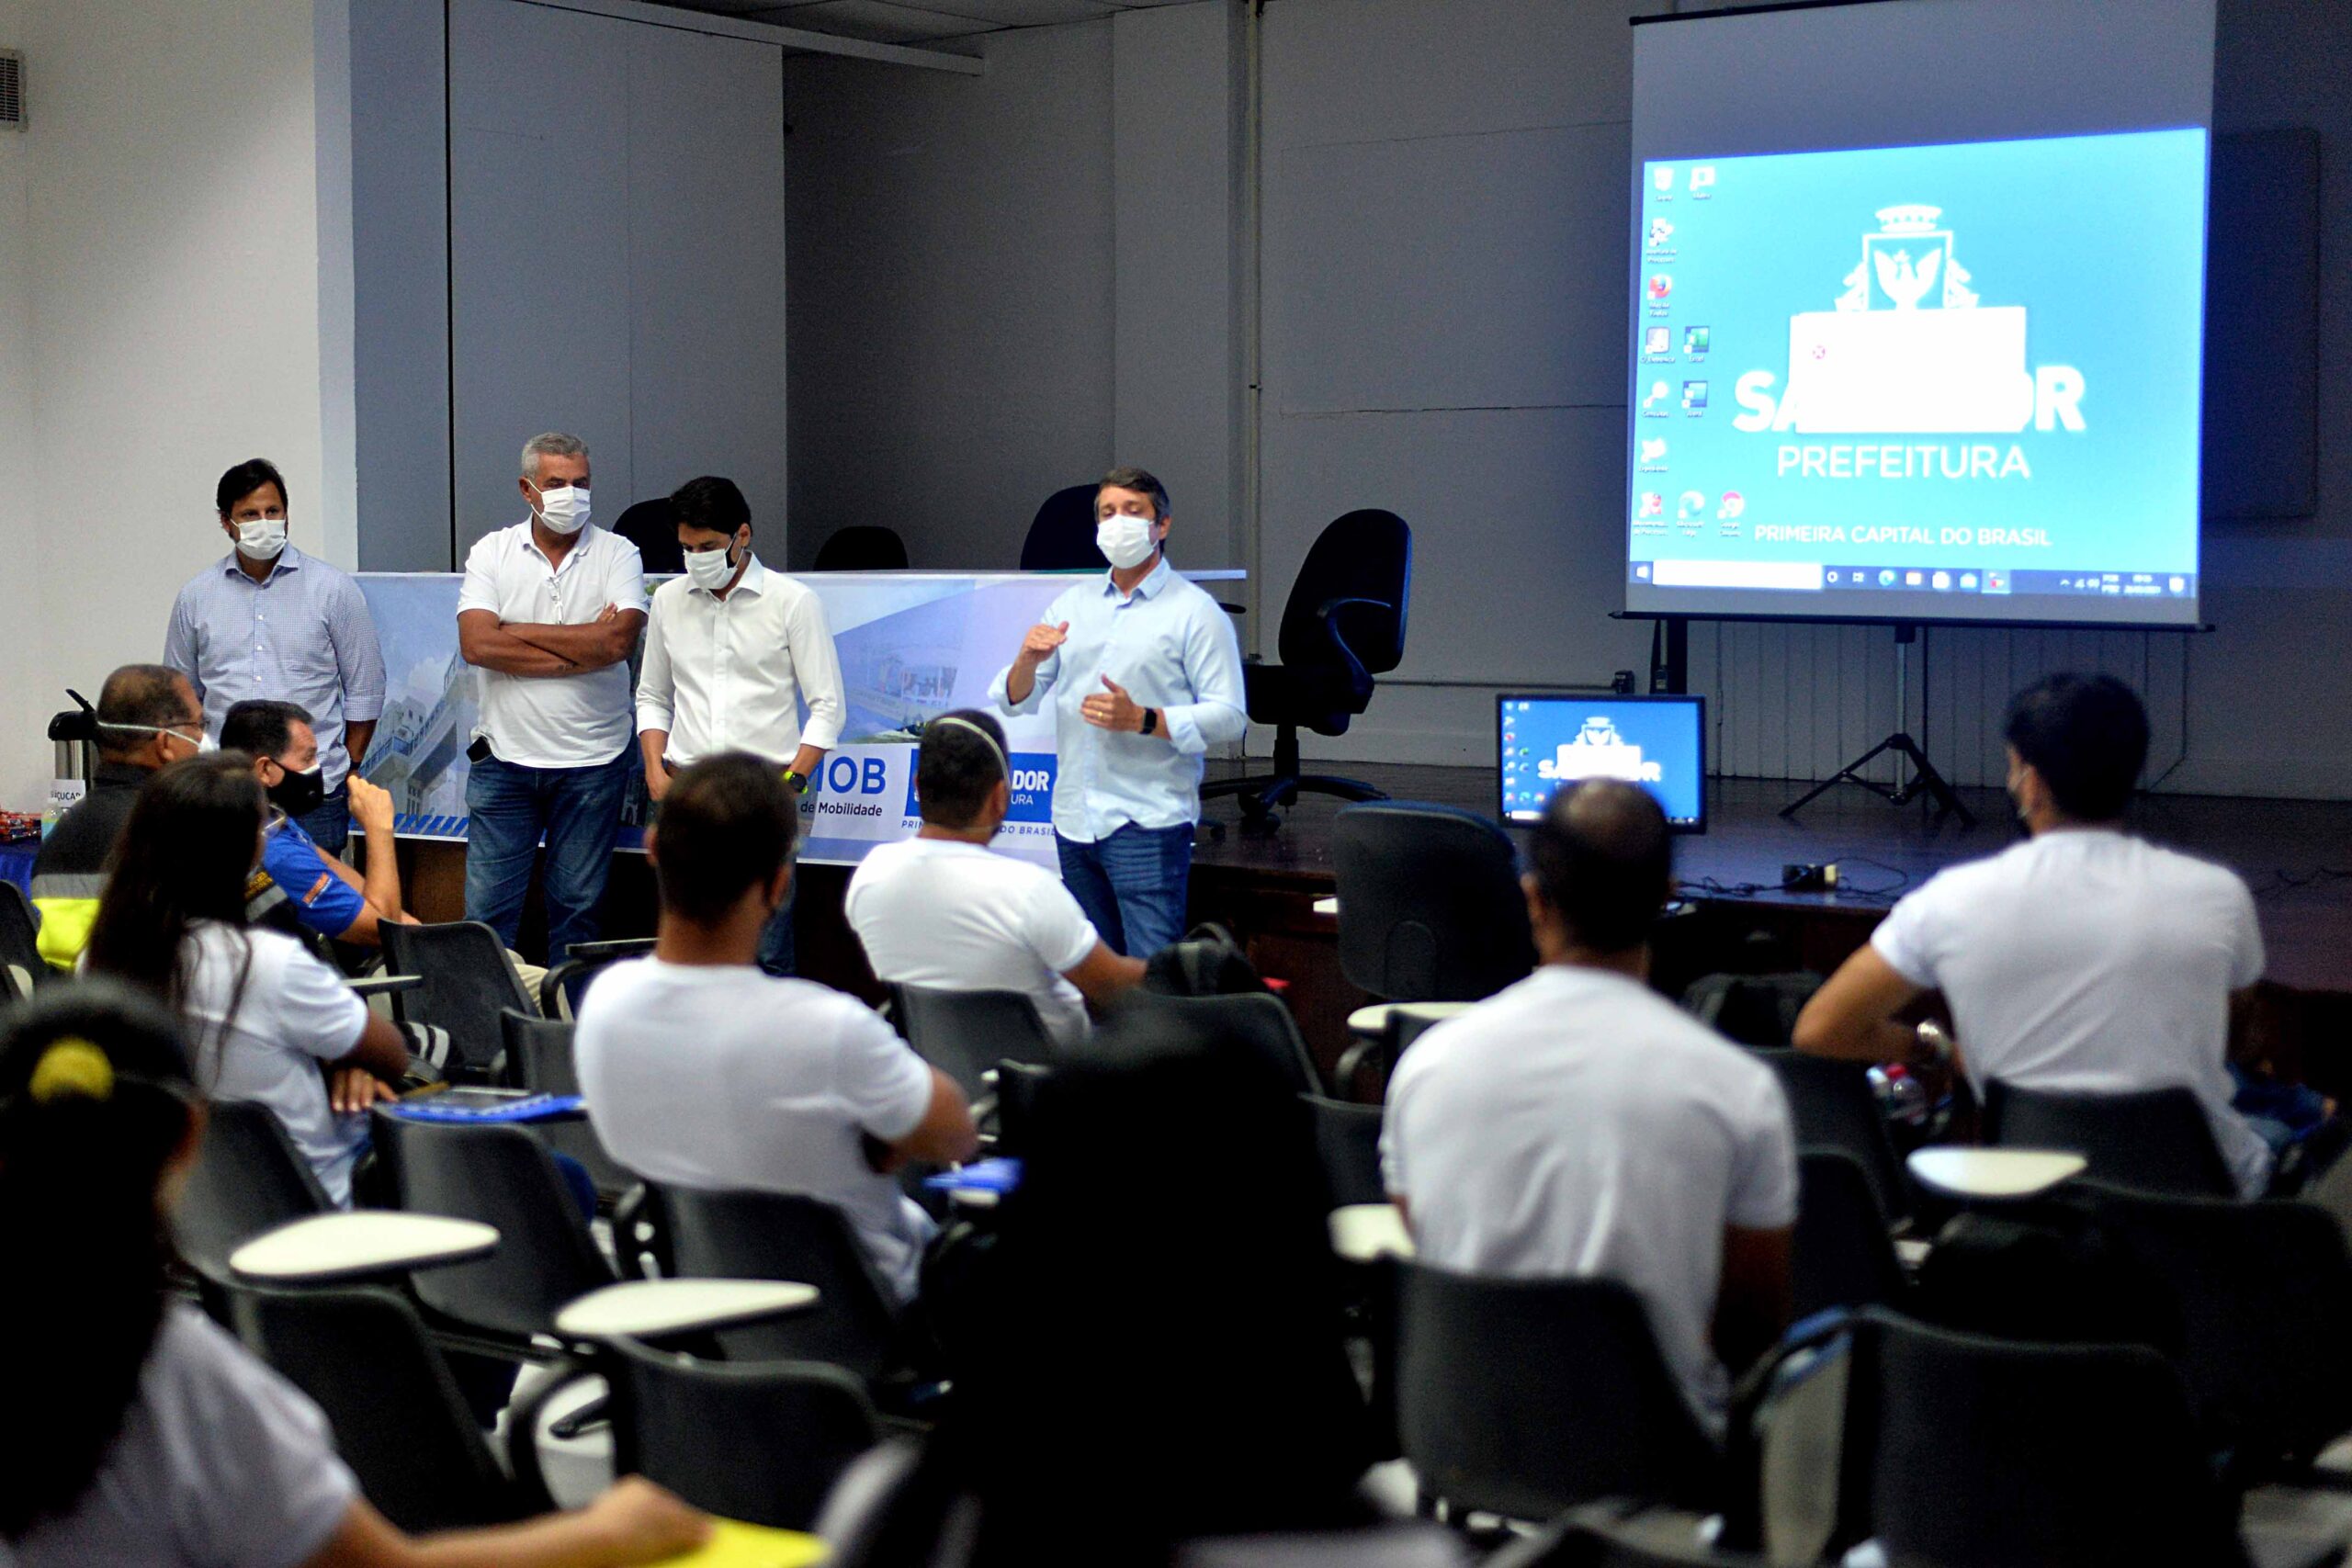 Curso de formação de agentes de trânsito e transporte é iniciado em Salvador